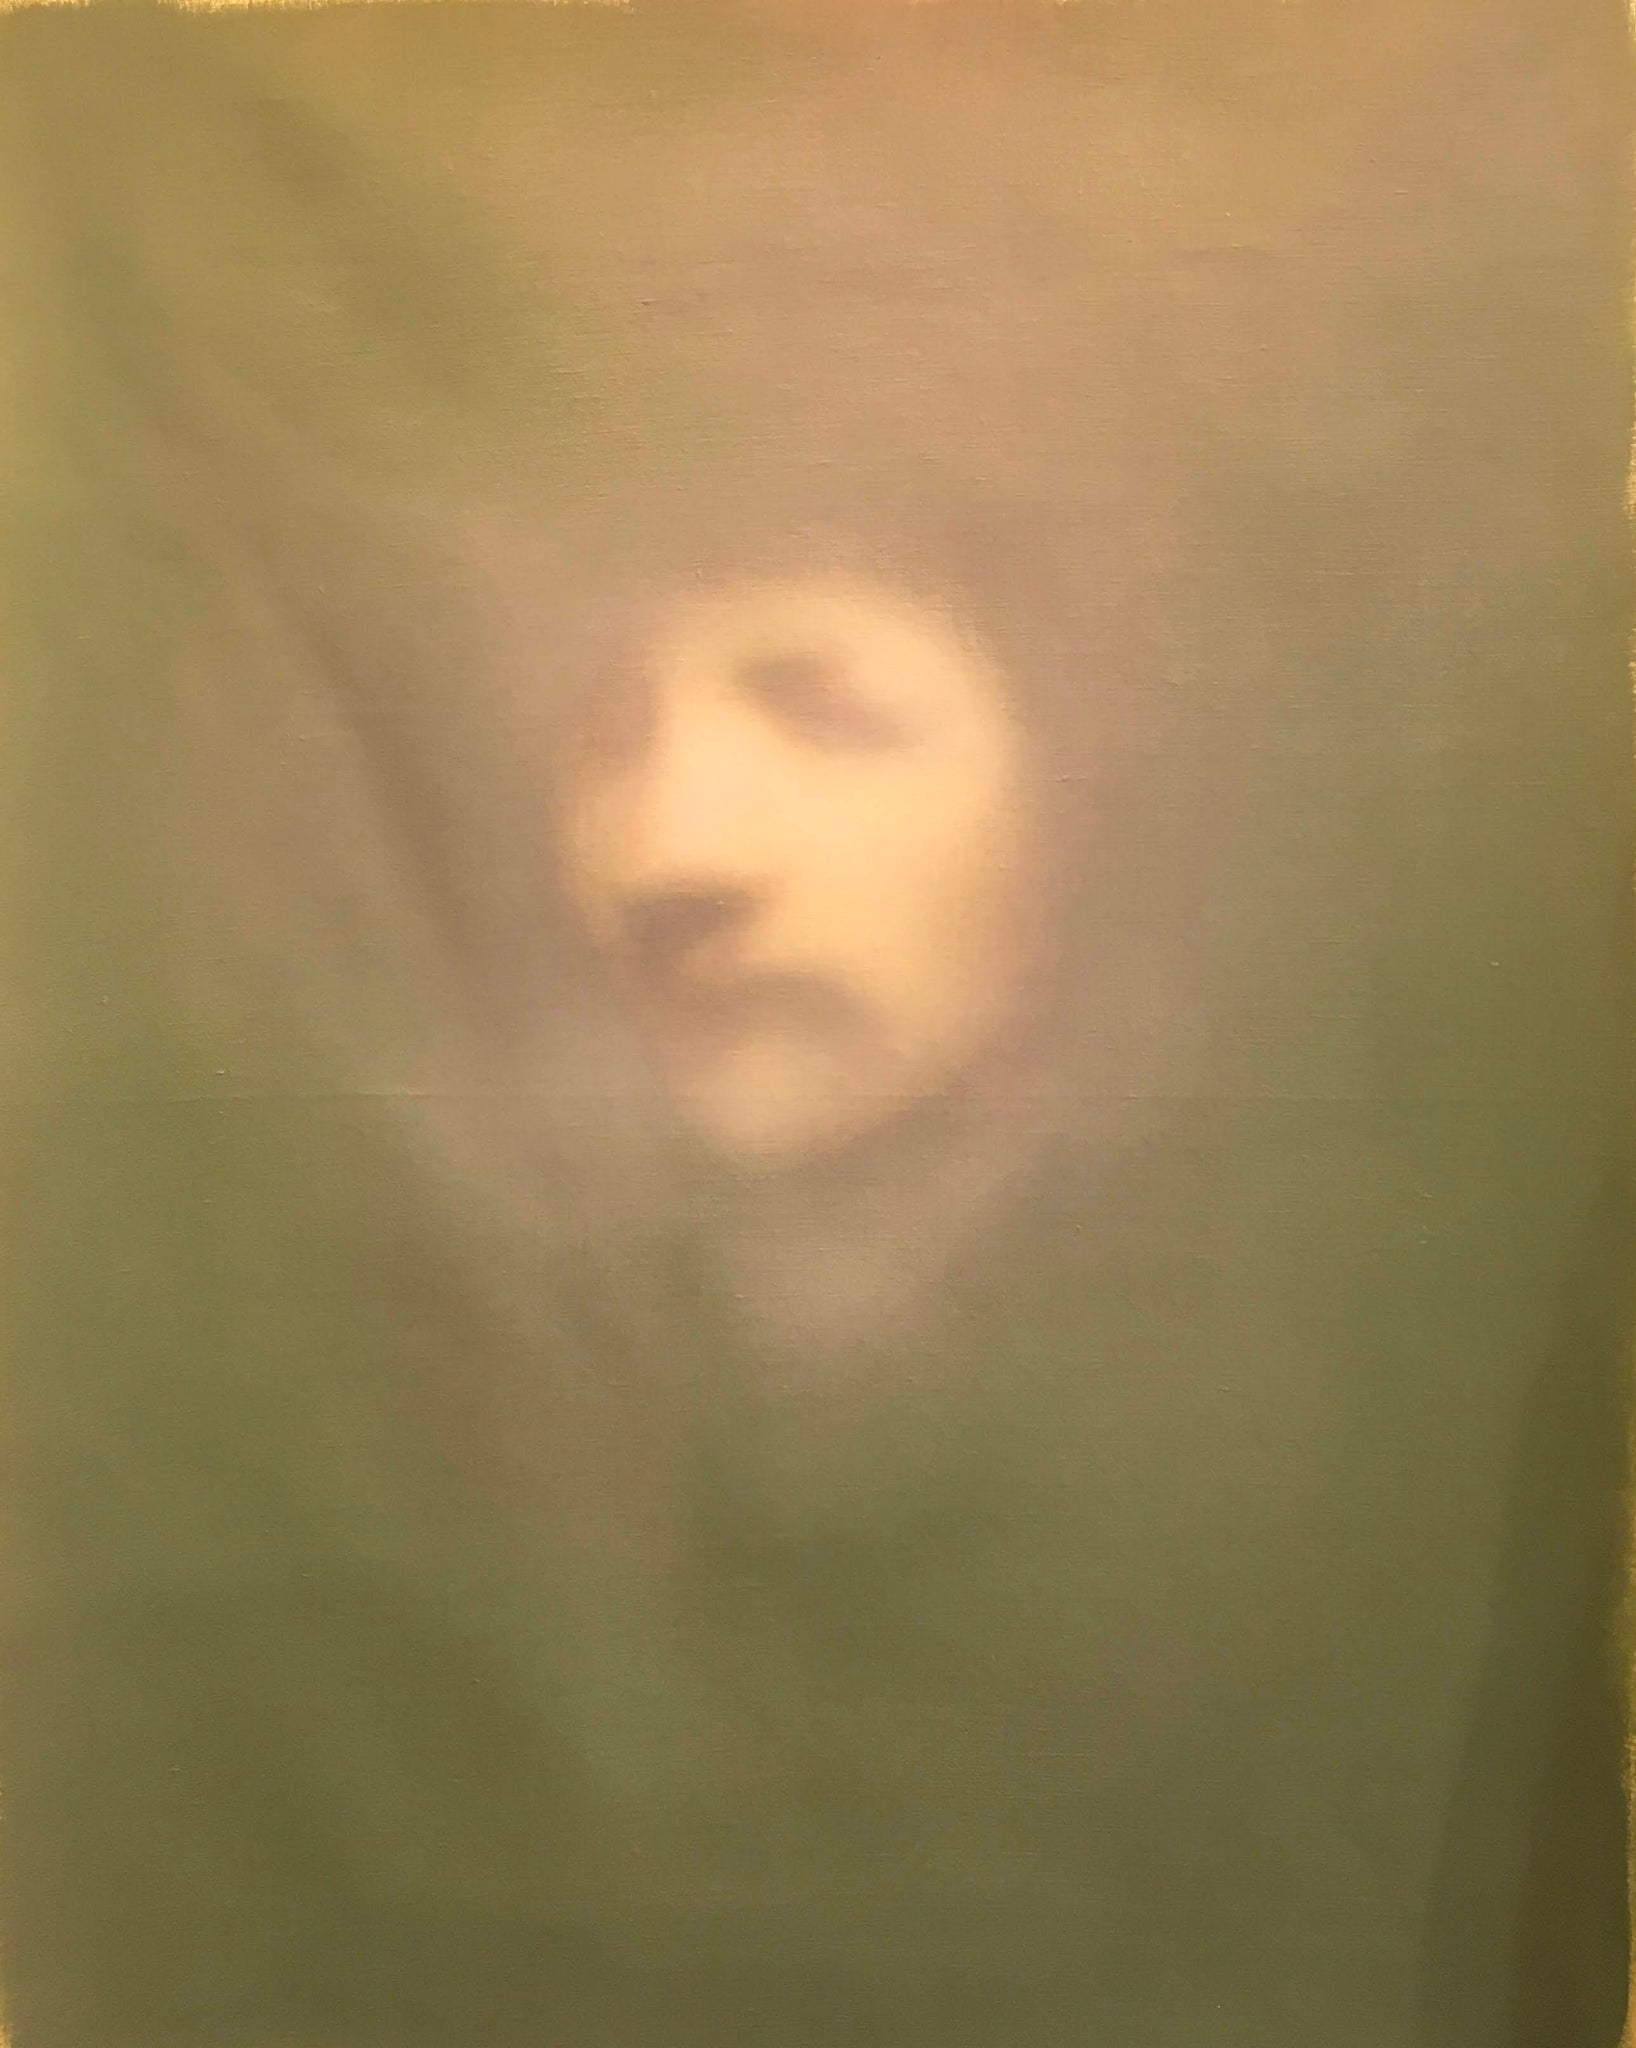 Portrait of Rembrandt's self-portrait 2